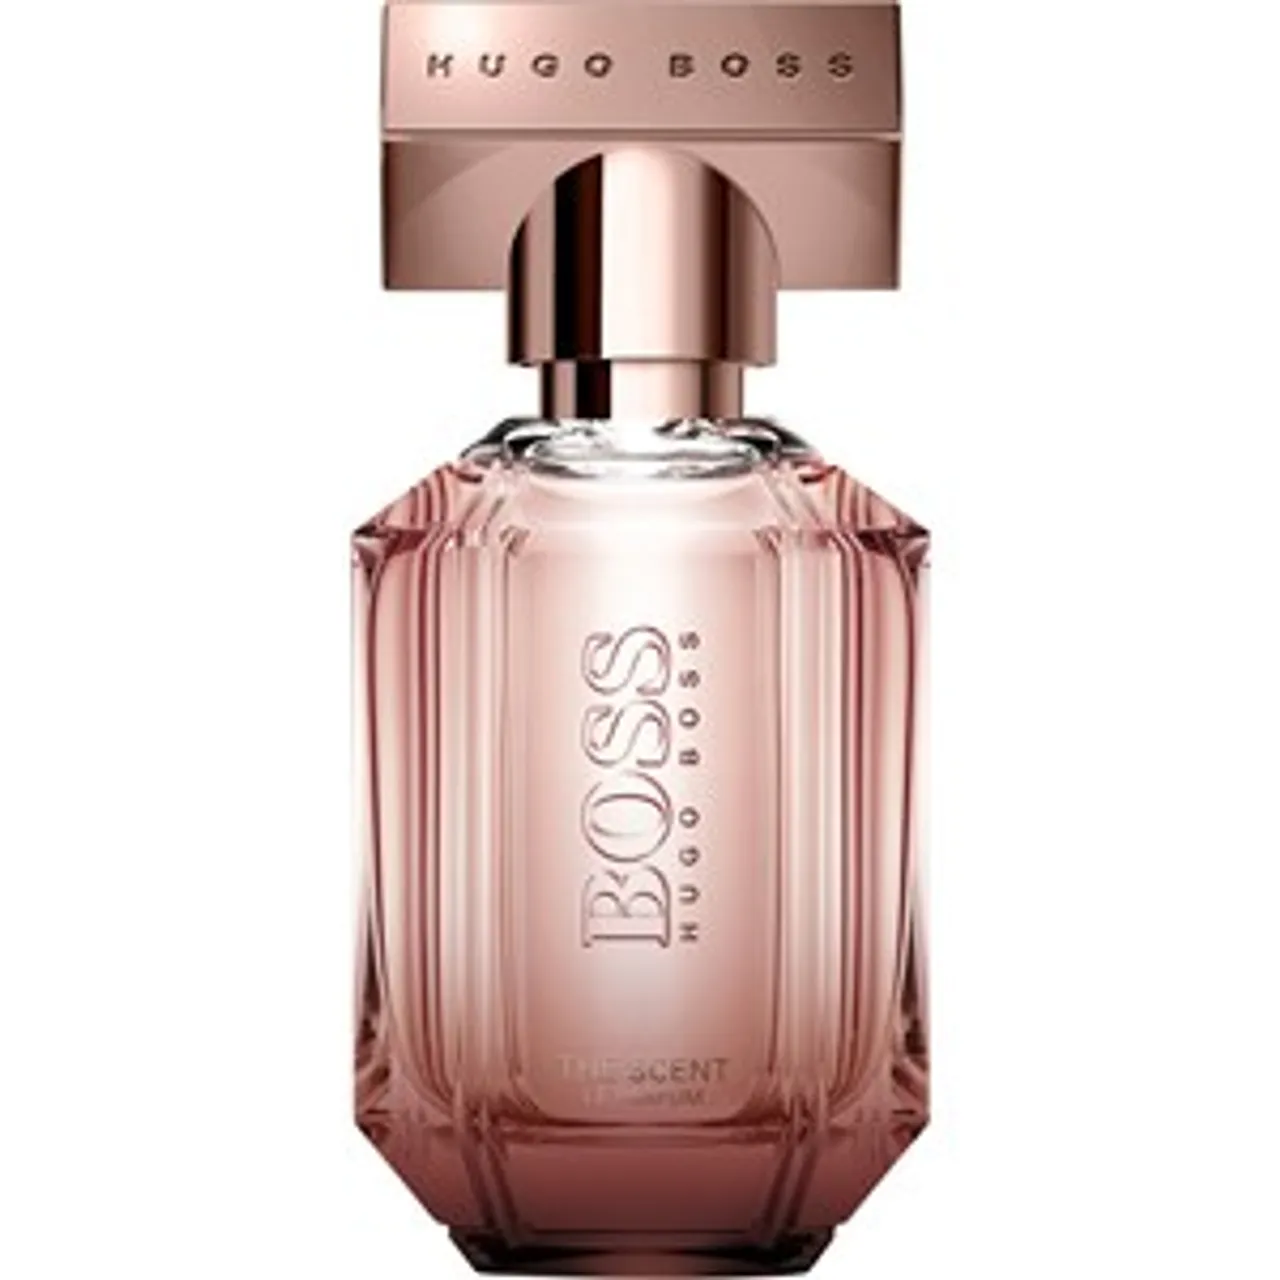 Hugo Boss Eau de Parfum Spray 2 50 ml